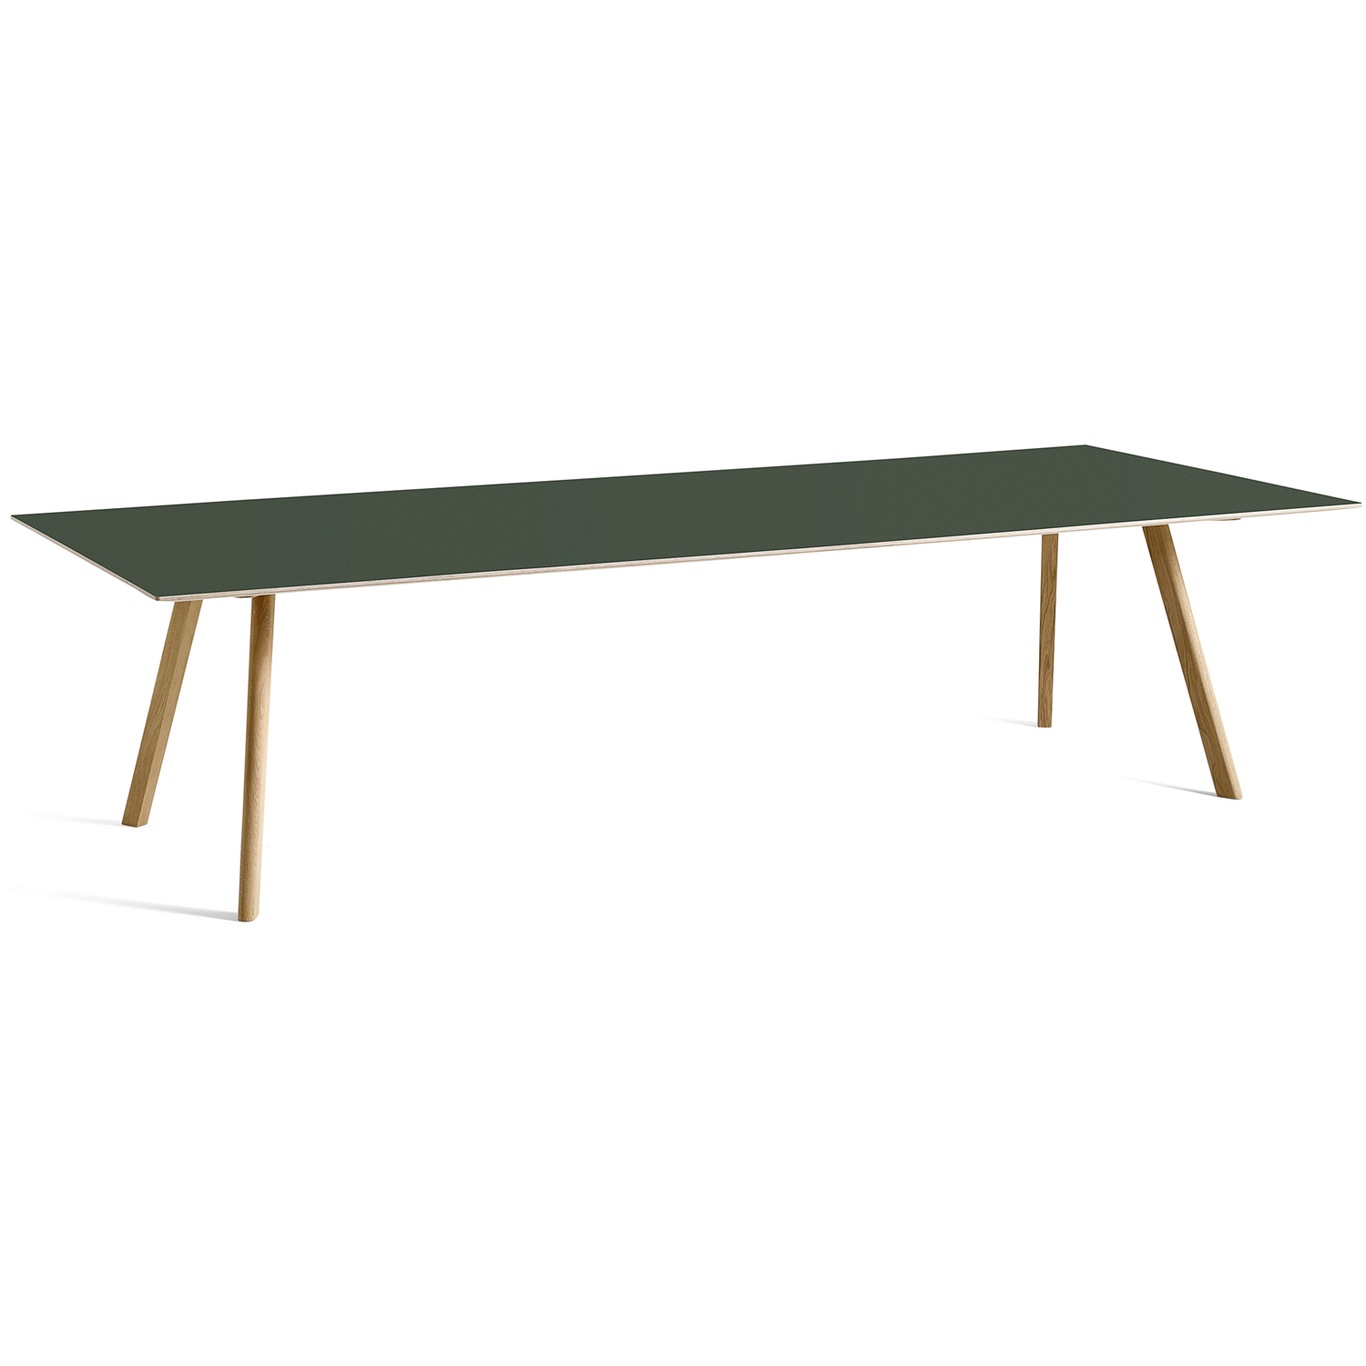 CPH 30 Pöytä 300x120 cm, Vesipohjaisella Lakalla Käsitelty Tammi / Vihreä Linoleumi